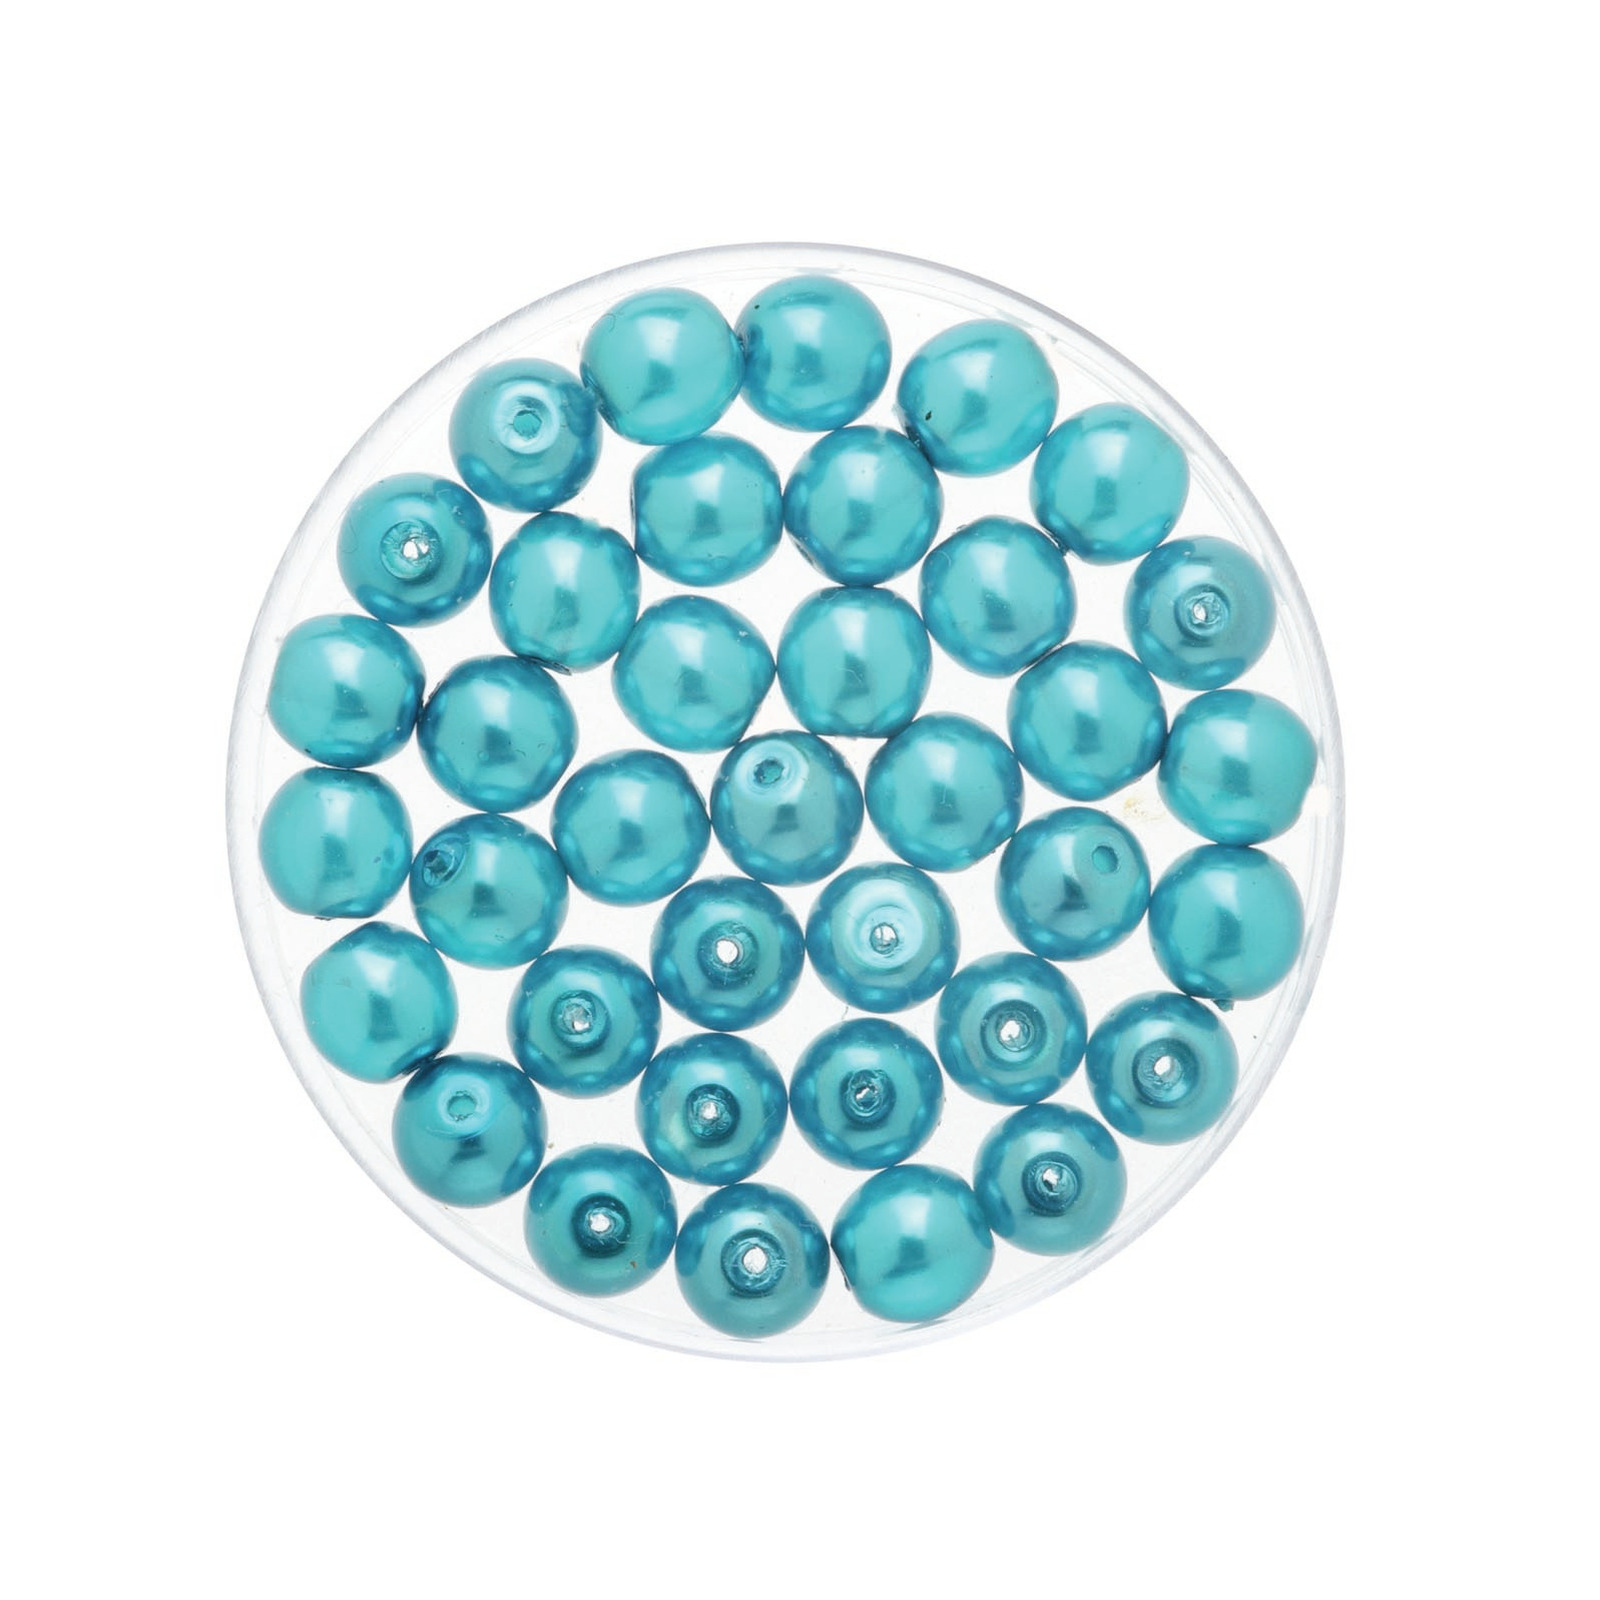 150x stuks sieraden maken Boheemse glaskralen in het transparant turquoise van 6 mm